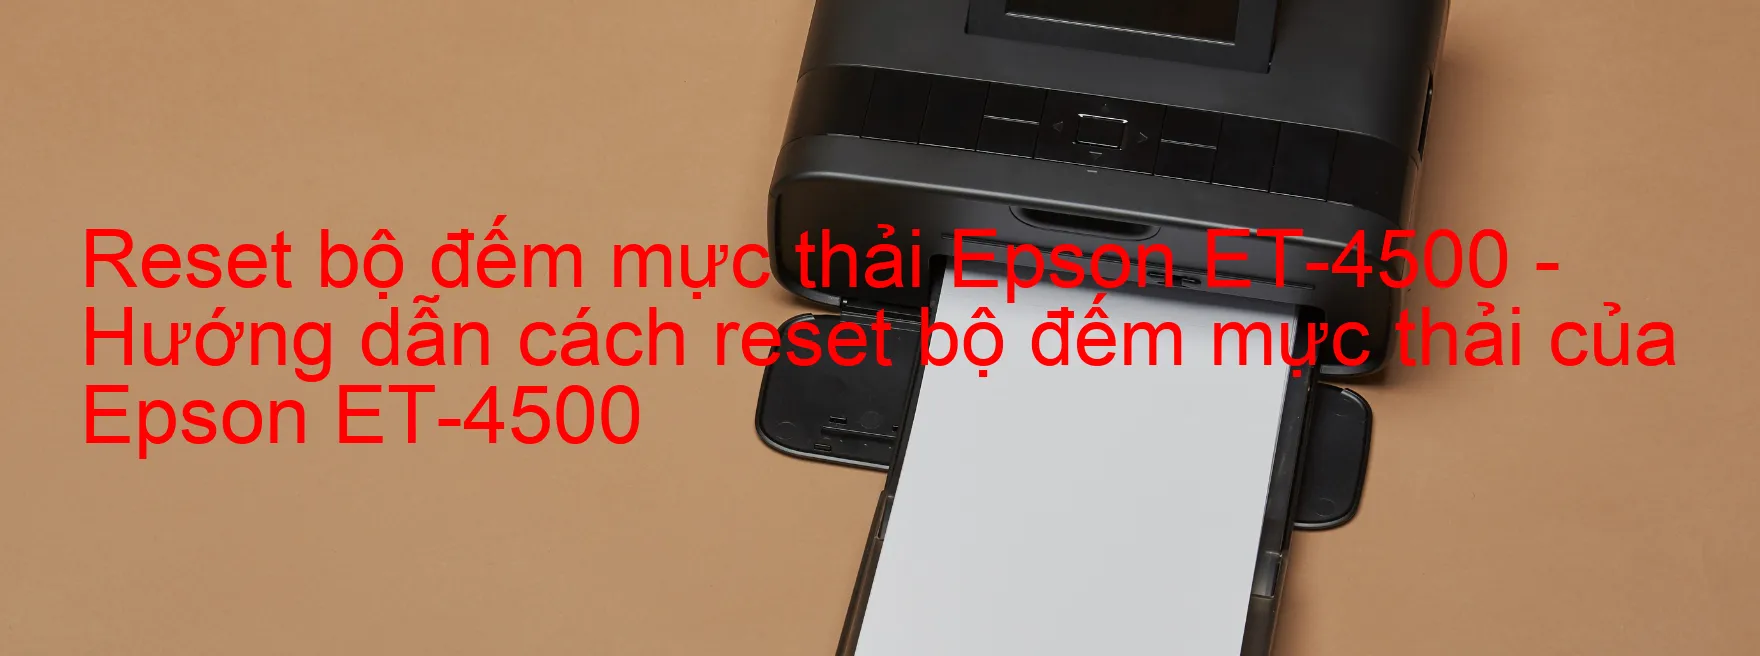 Reset bộ đếm mực thải Epson ET-4500 - Hướng dẫn cách reset bộ đếm mực thải của Epson ET-4500